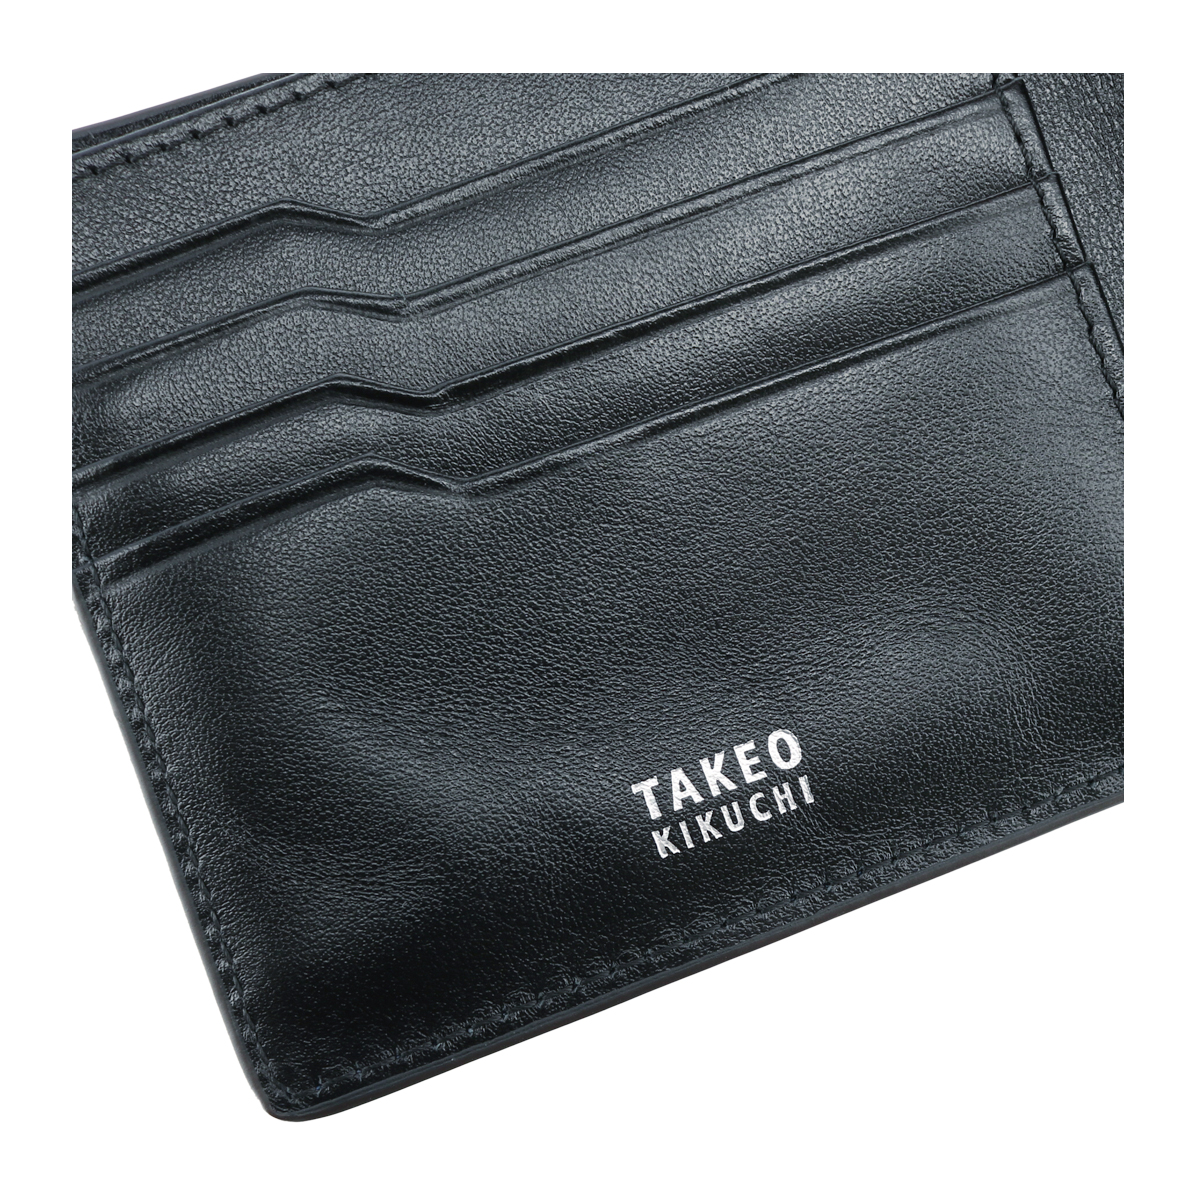 楽天市場】タケオキクチ 二つ折り財布 イタリーストライプ メンズ 